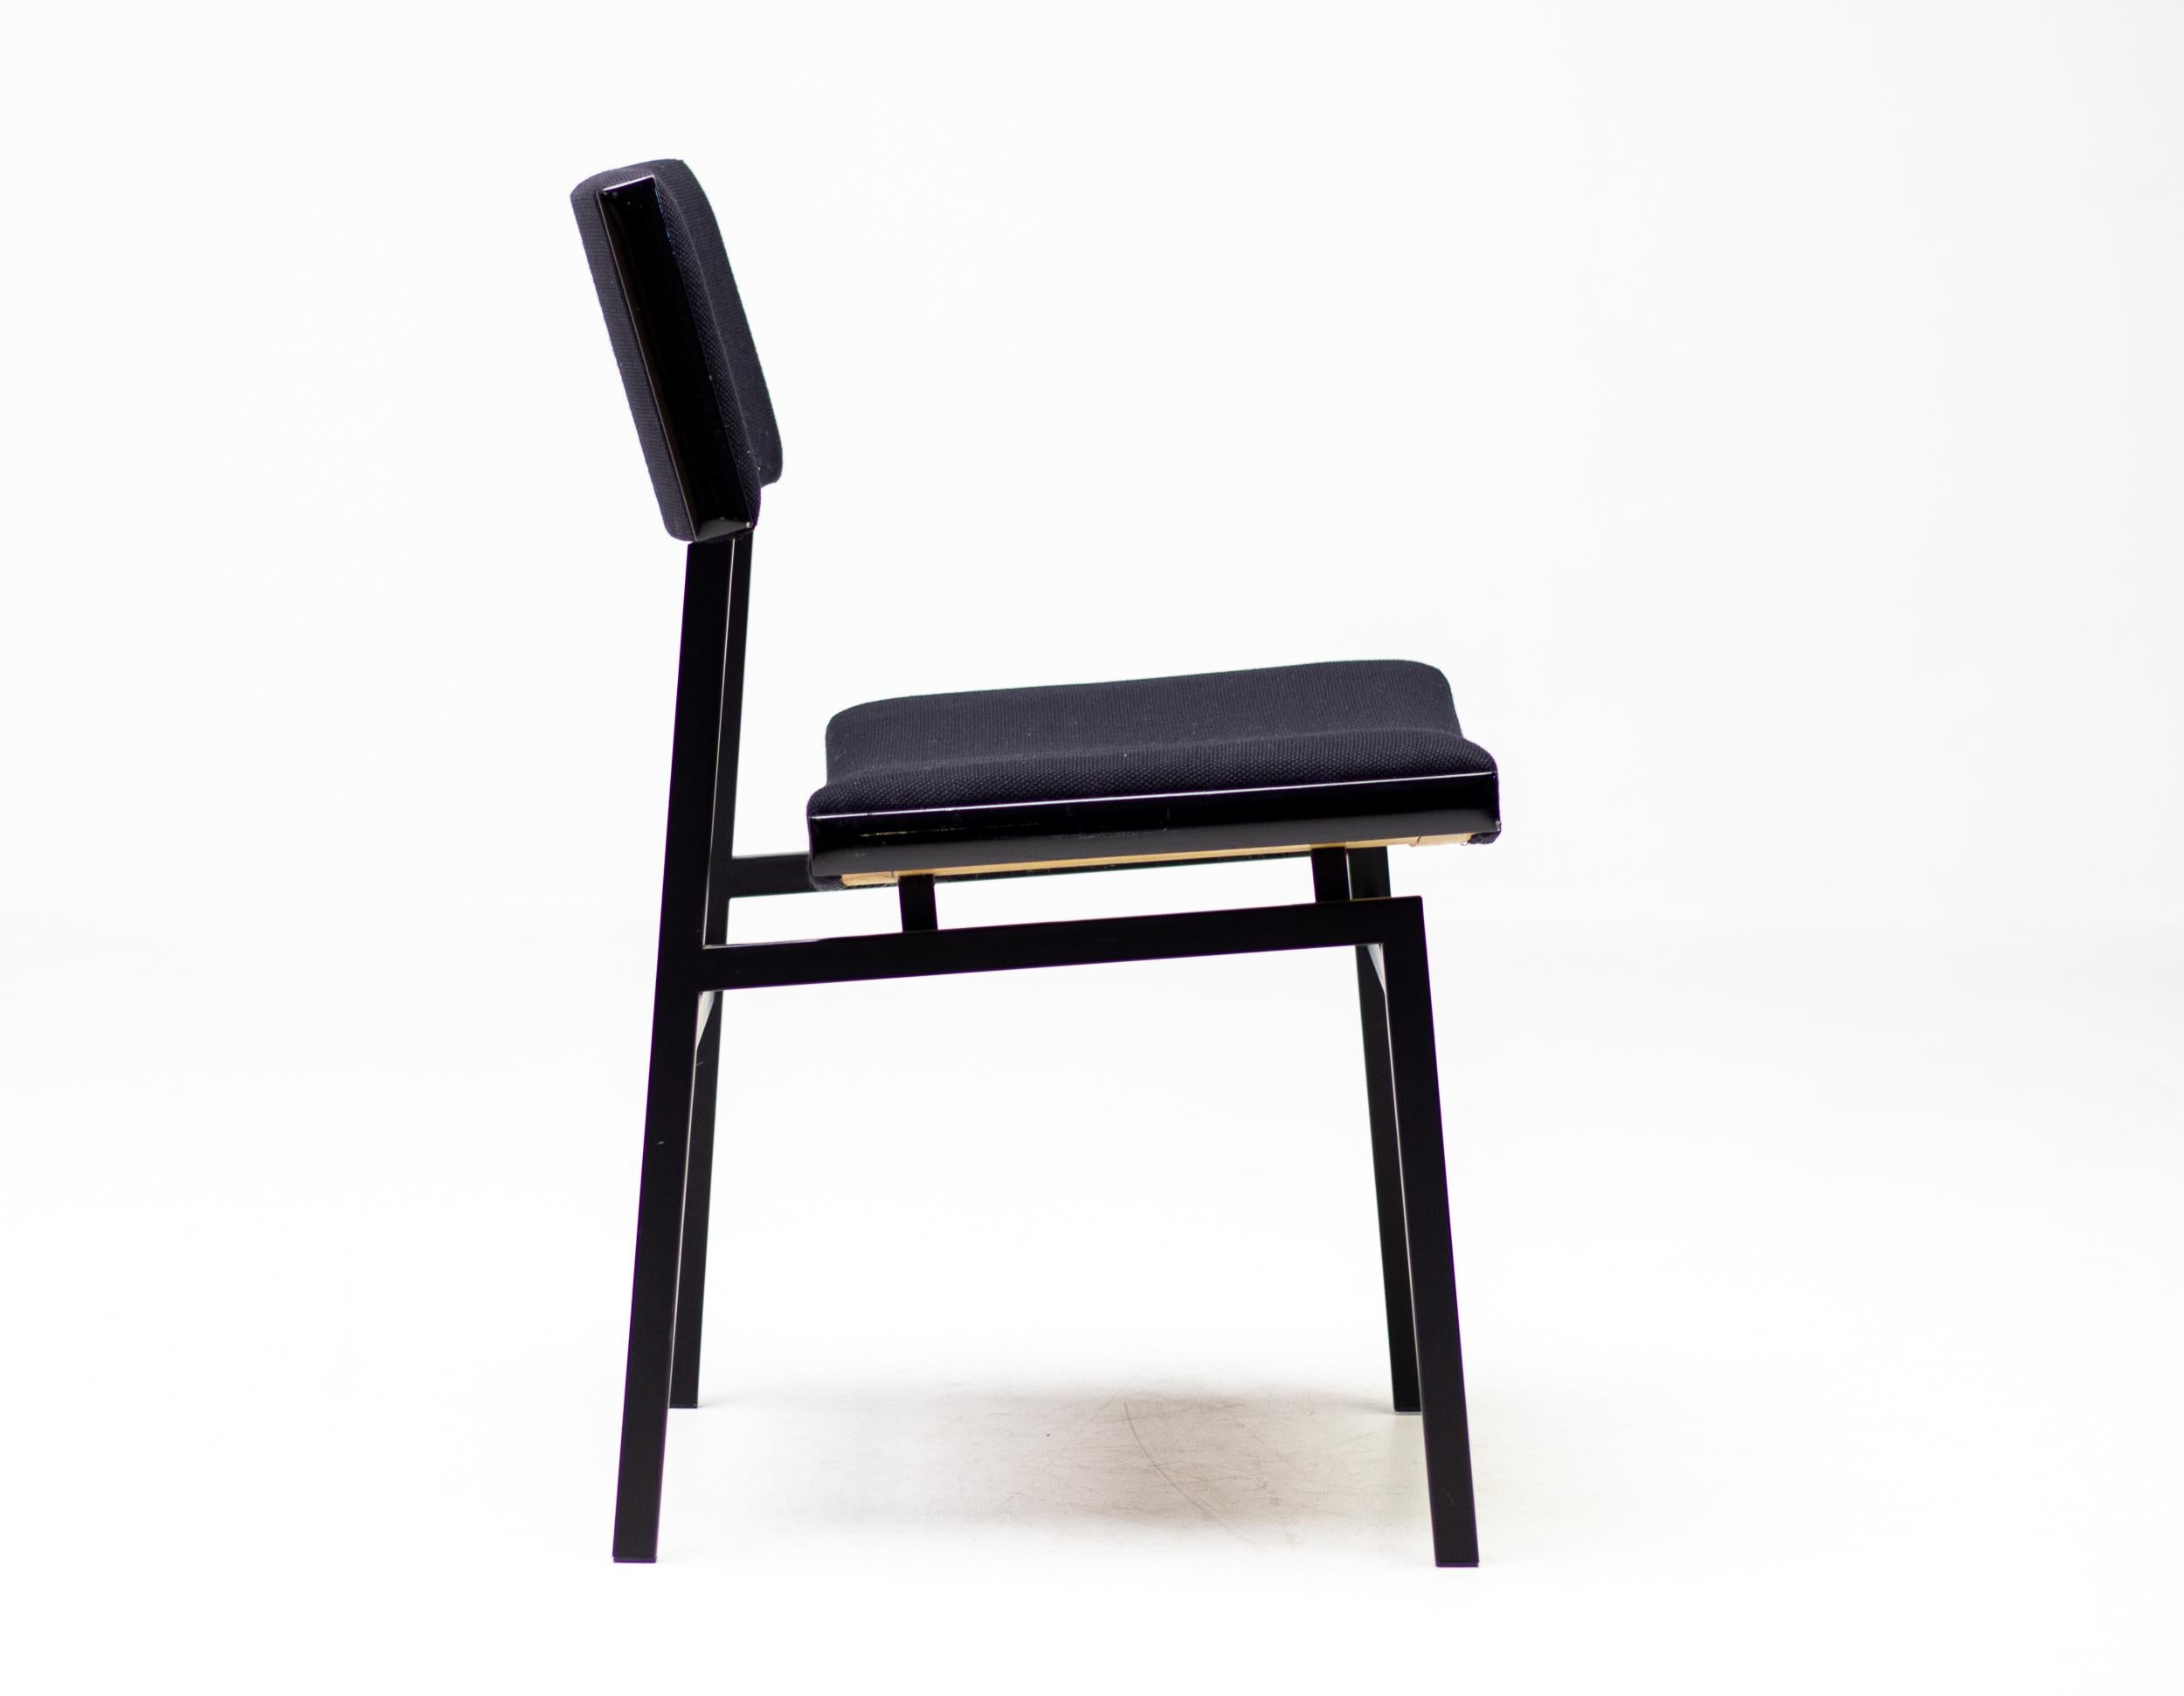 Satz von 4 architektonischen Mid-Century modern Stühlen aus den Niederlanden von Hulmefa.
Die niederländische Mid-Century-Moderne zeichnet sich durch Schlichtheit und Funktionalität im Kontext der industriellen Produktion sowie durch die